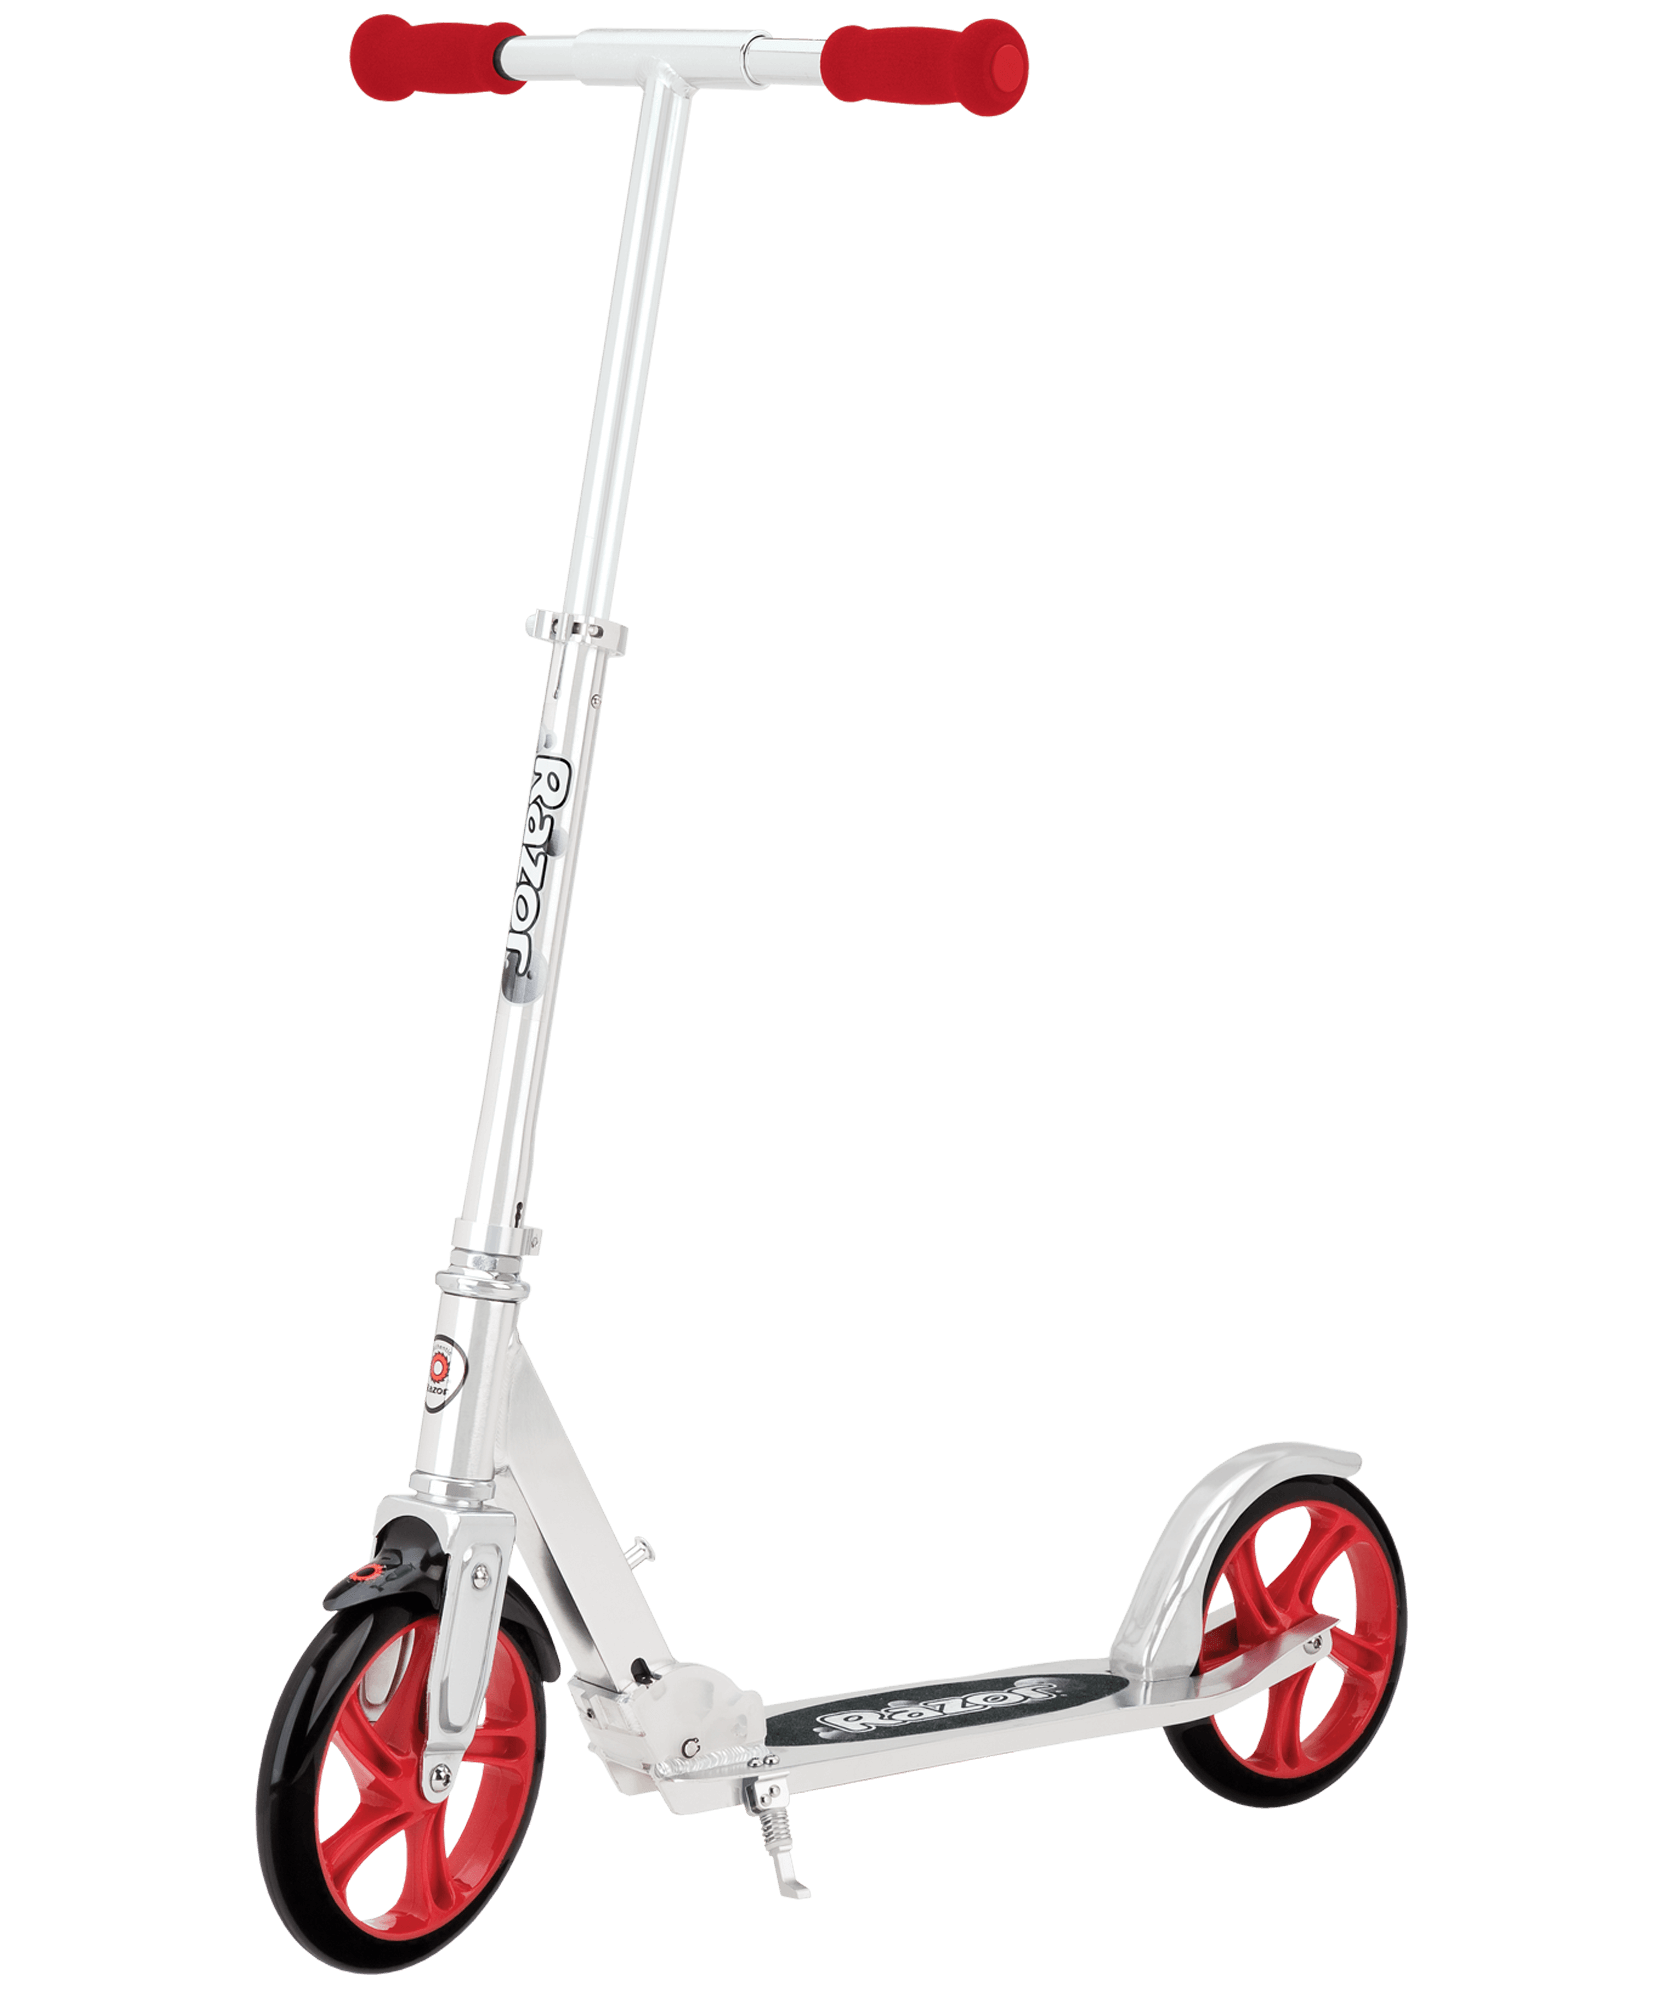 3 Wheel Kick Скутер прозрачный PNG